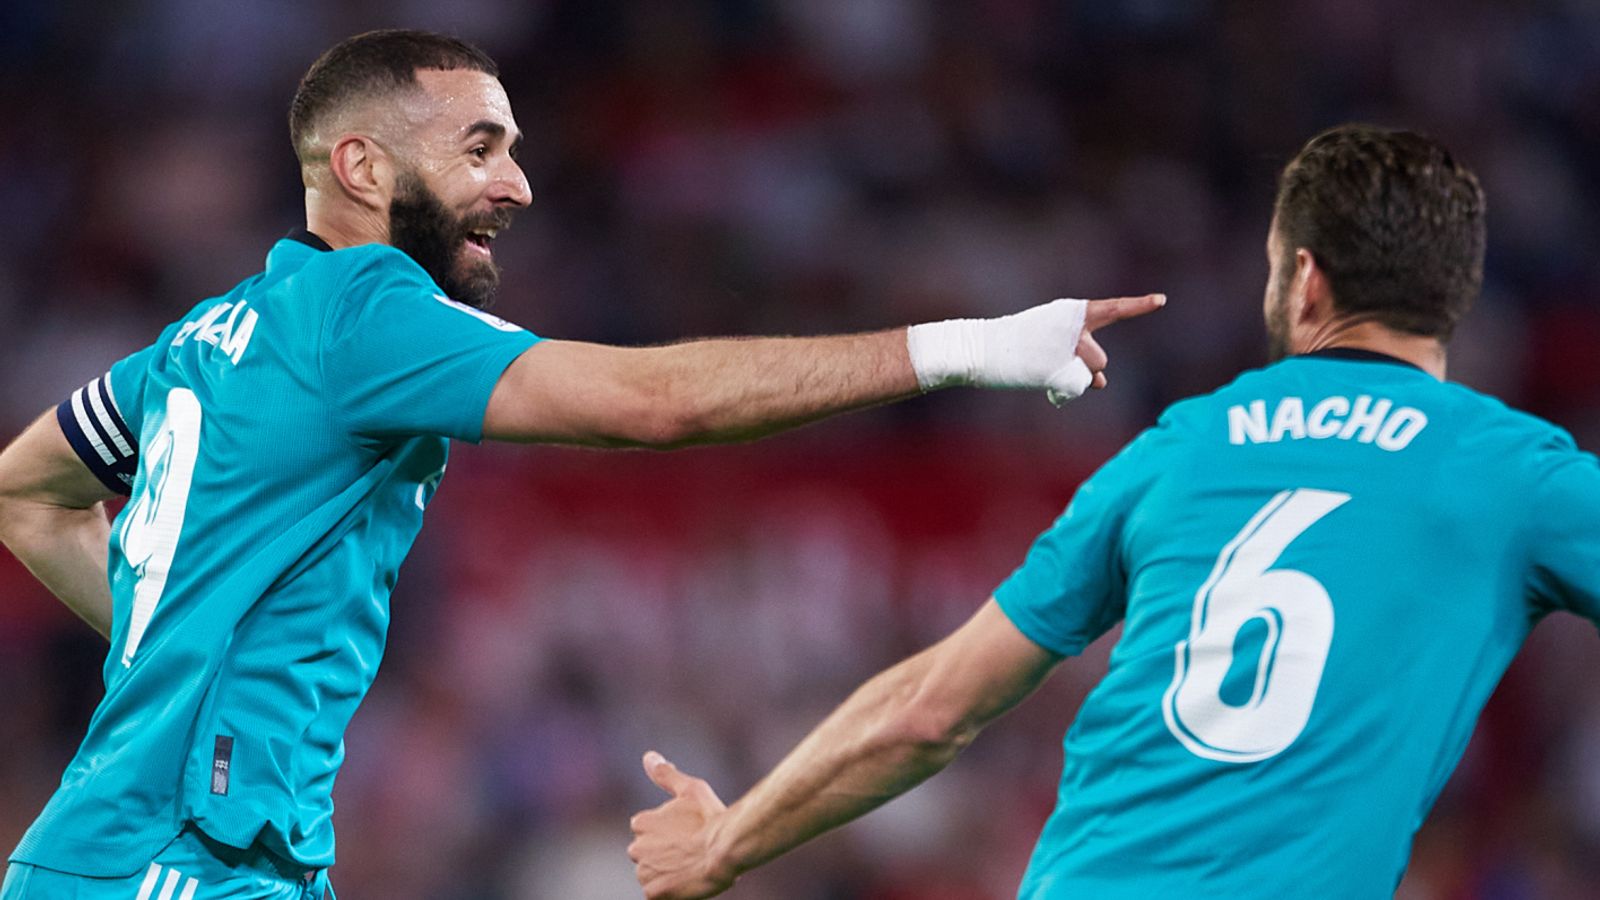 El gol de Karim Benzema en el último suspiro completa la impresionante remontada del Real Madrid ante el Sevilla – Resumen europeo |  Noticias de futbol